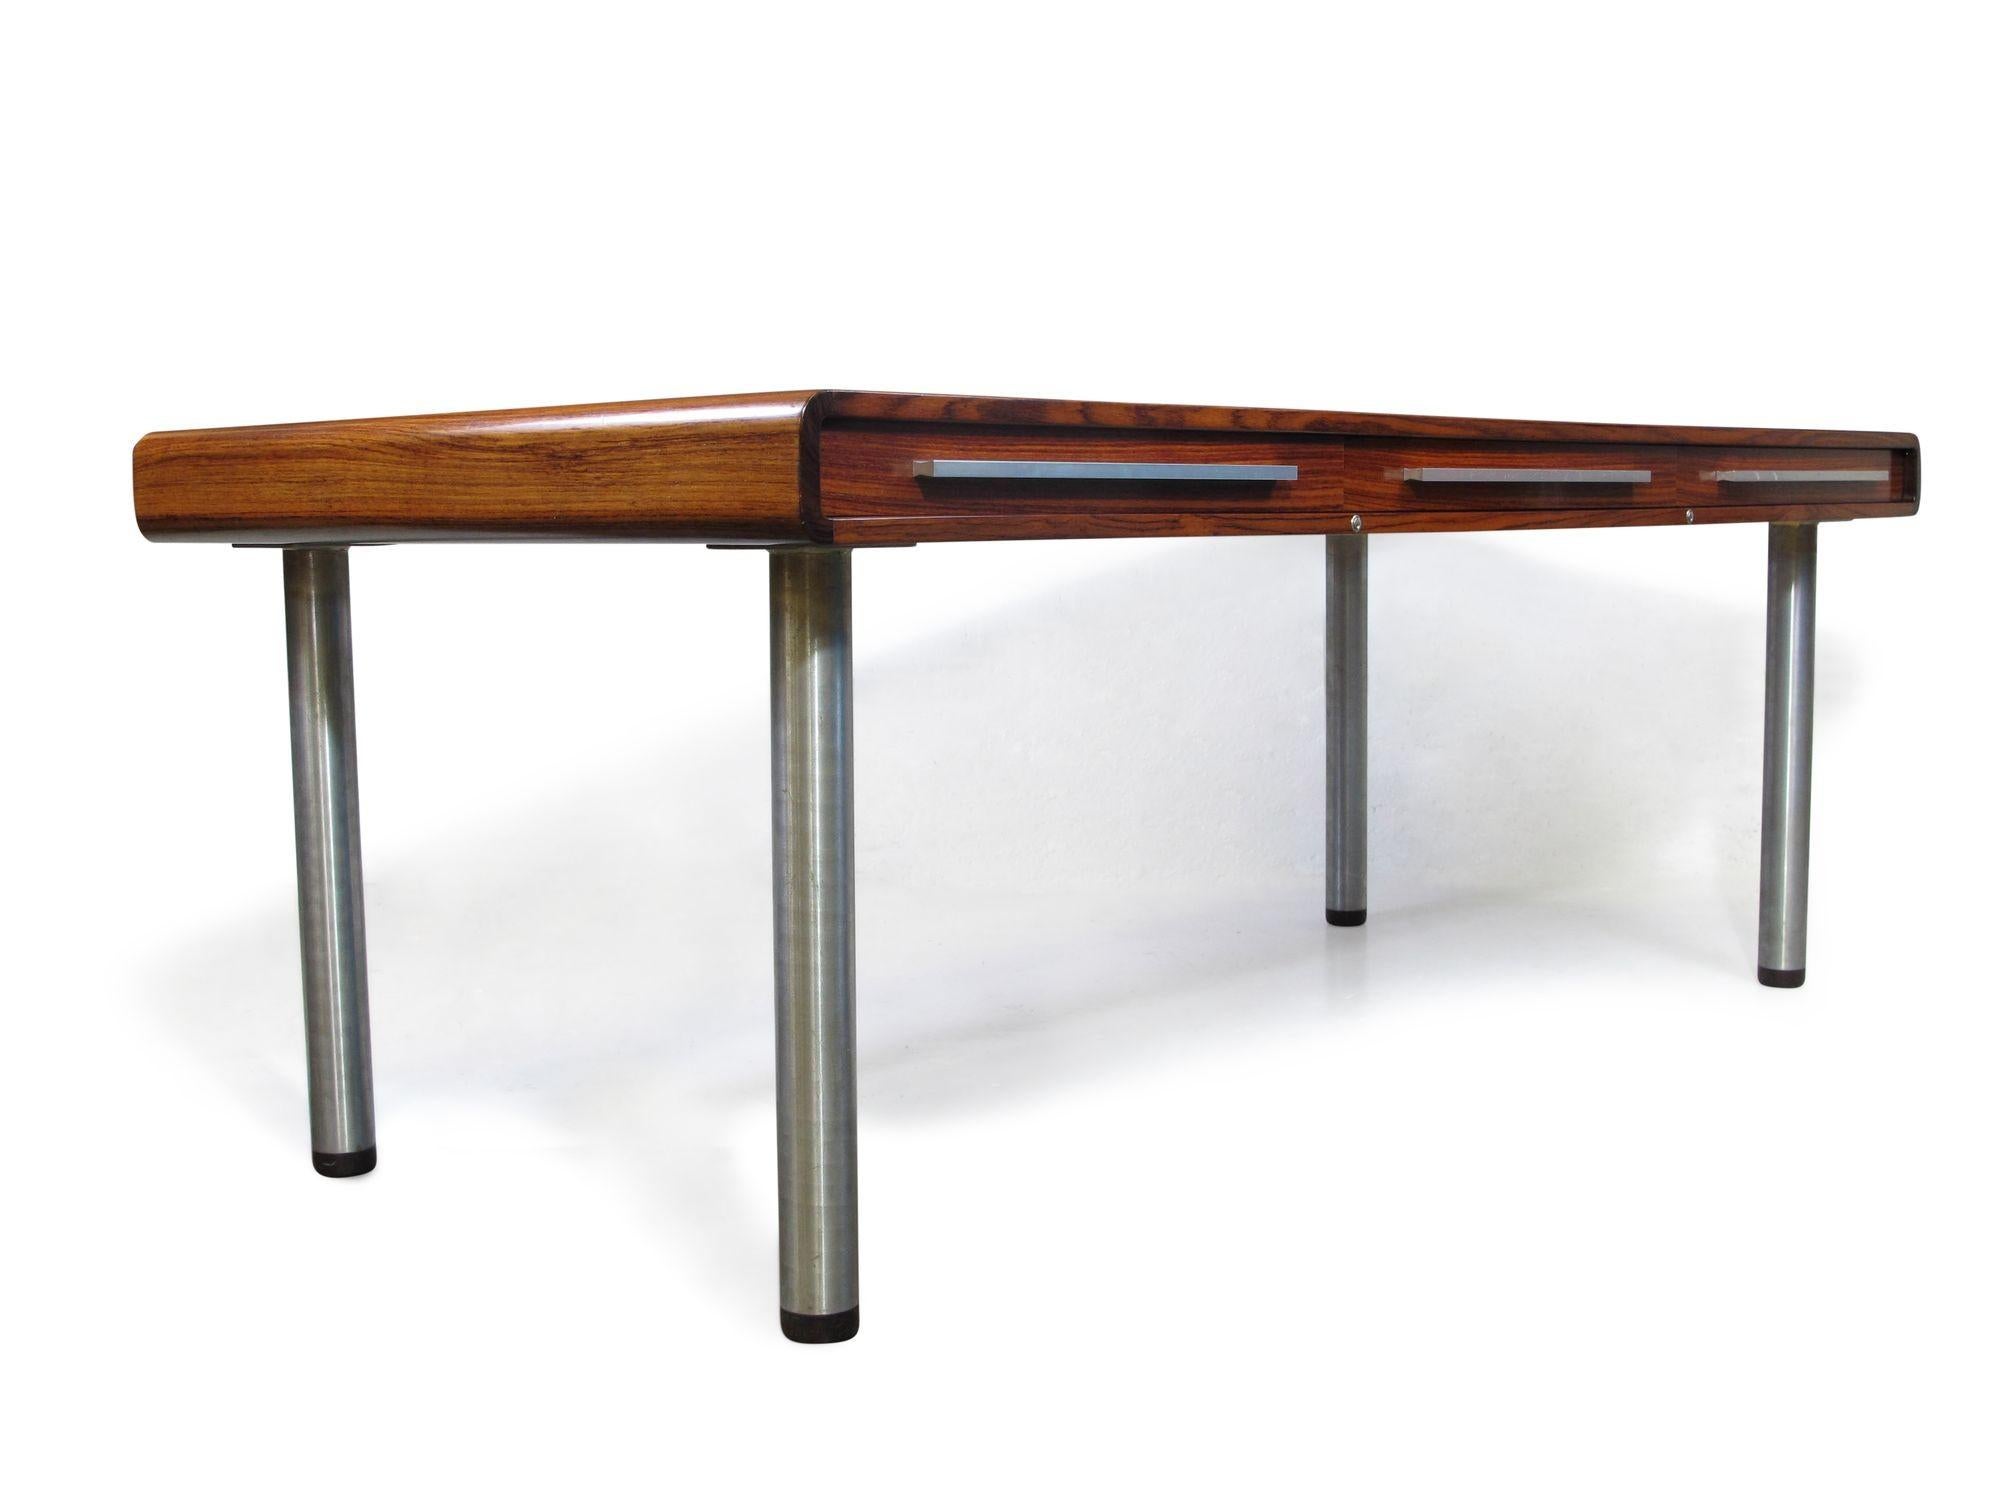 Chefschreibtisch Santos aus Palisanderholz, 1970, Dyrlund, Dänemark. Große Arbeitsfläche aus Palisanderholz mit drei großen Schubladen. Auf Metallfüßen stehend. Der Schreibtisch ist in einem guten Zustand mit geringen Alters- und Gebrauchsspuren.